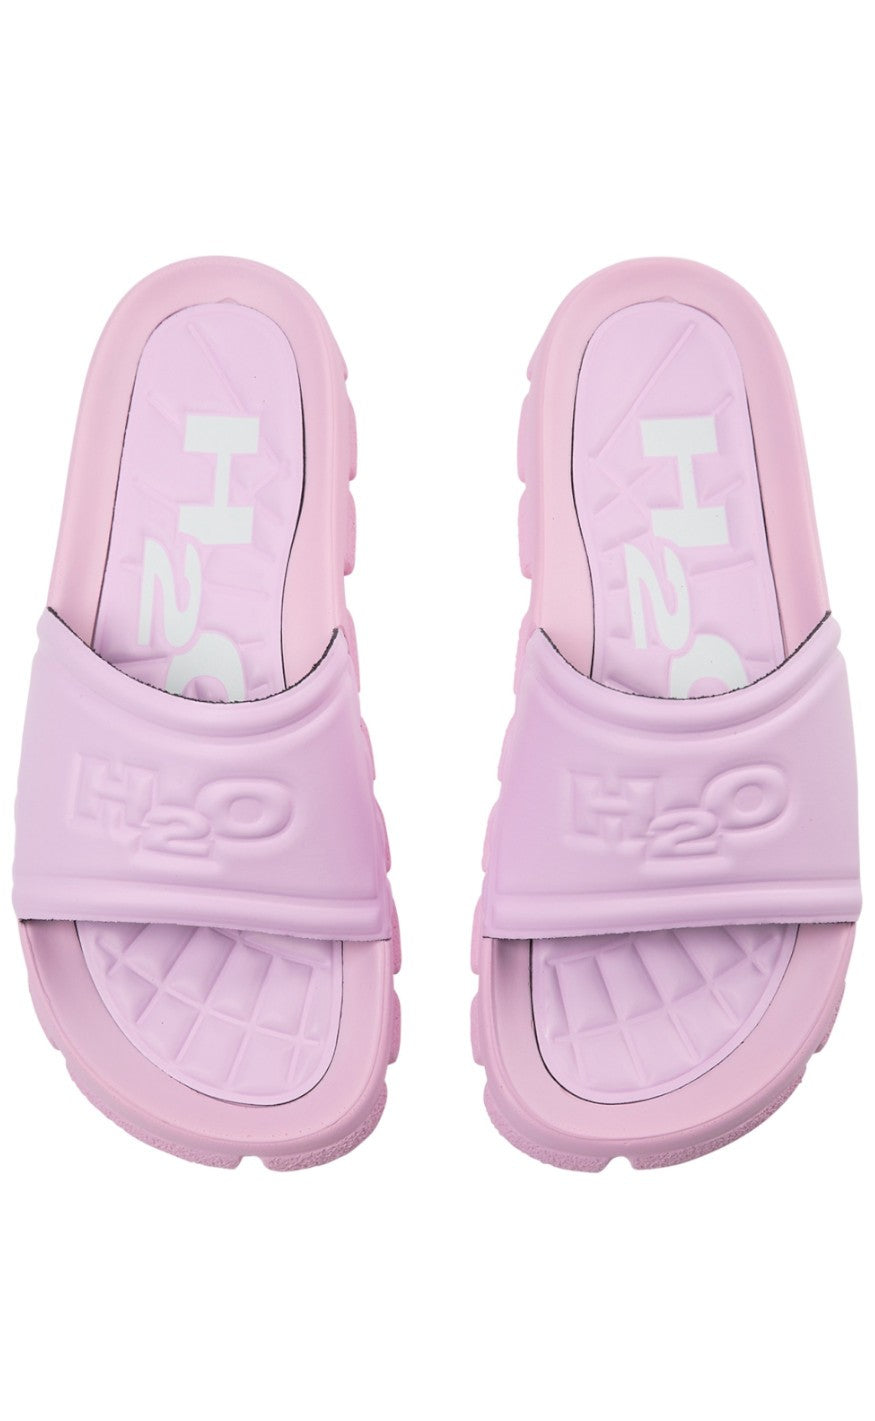 10: H2O Sandal - Trek - Light Pink